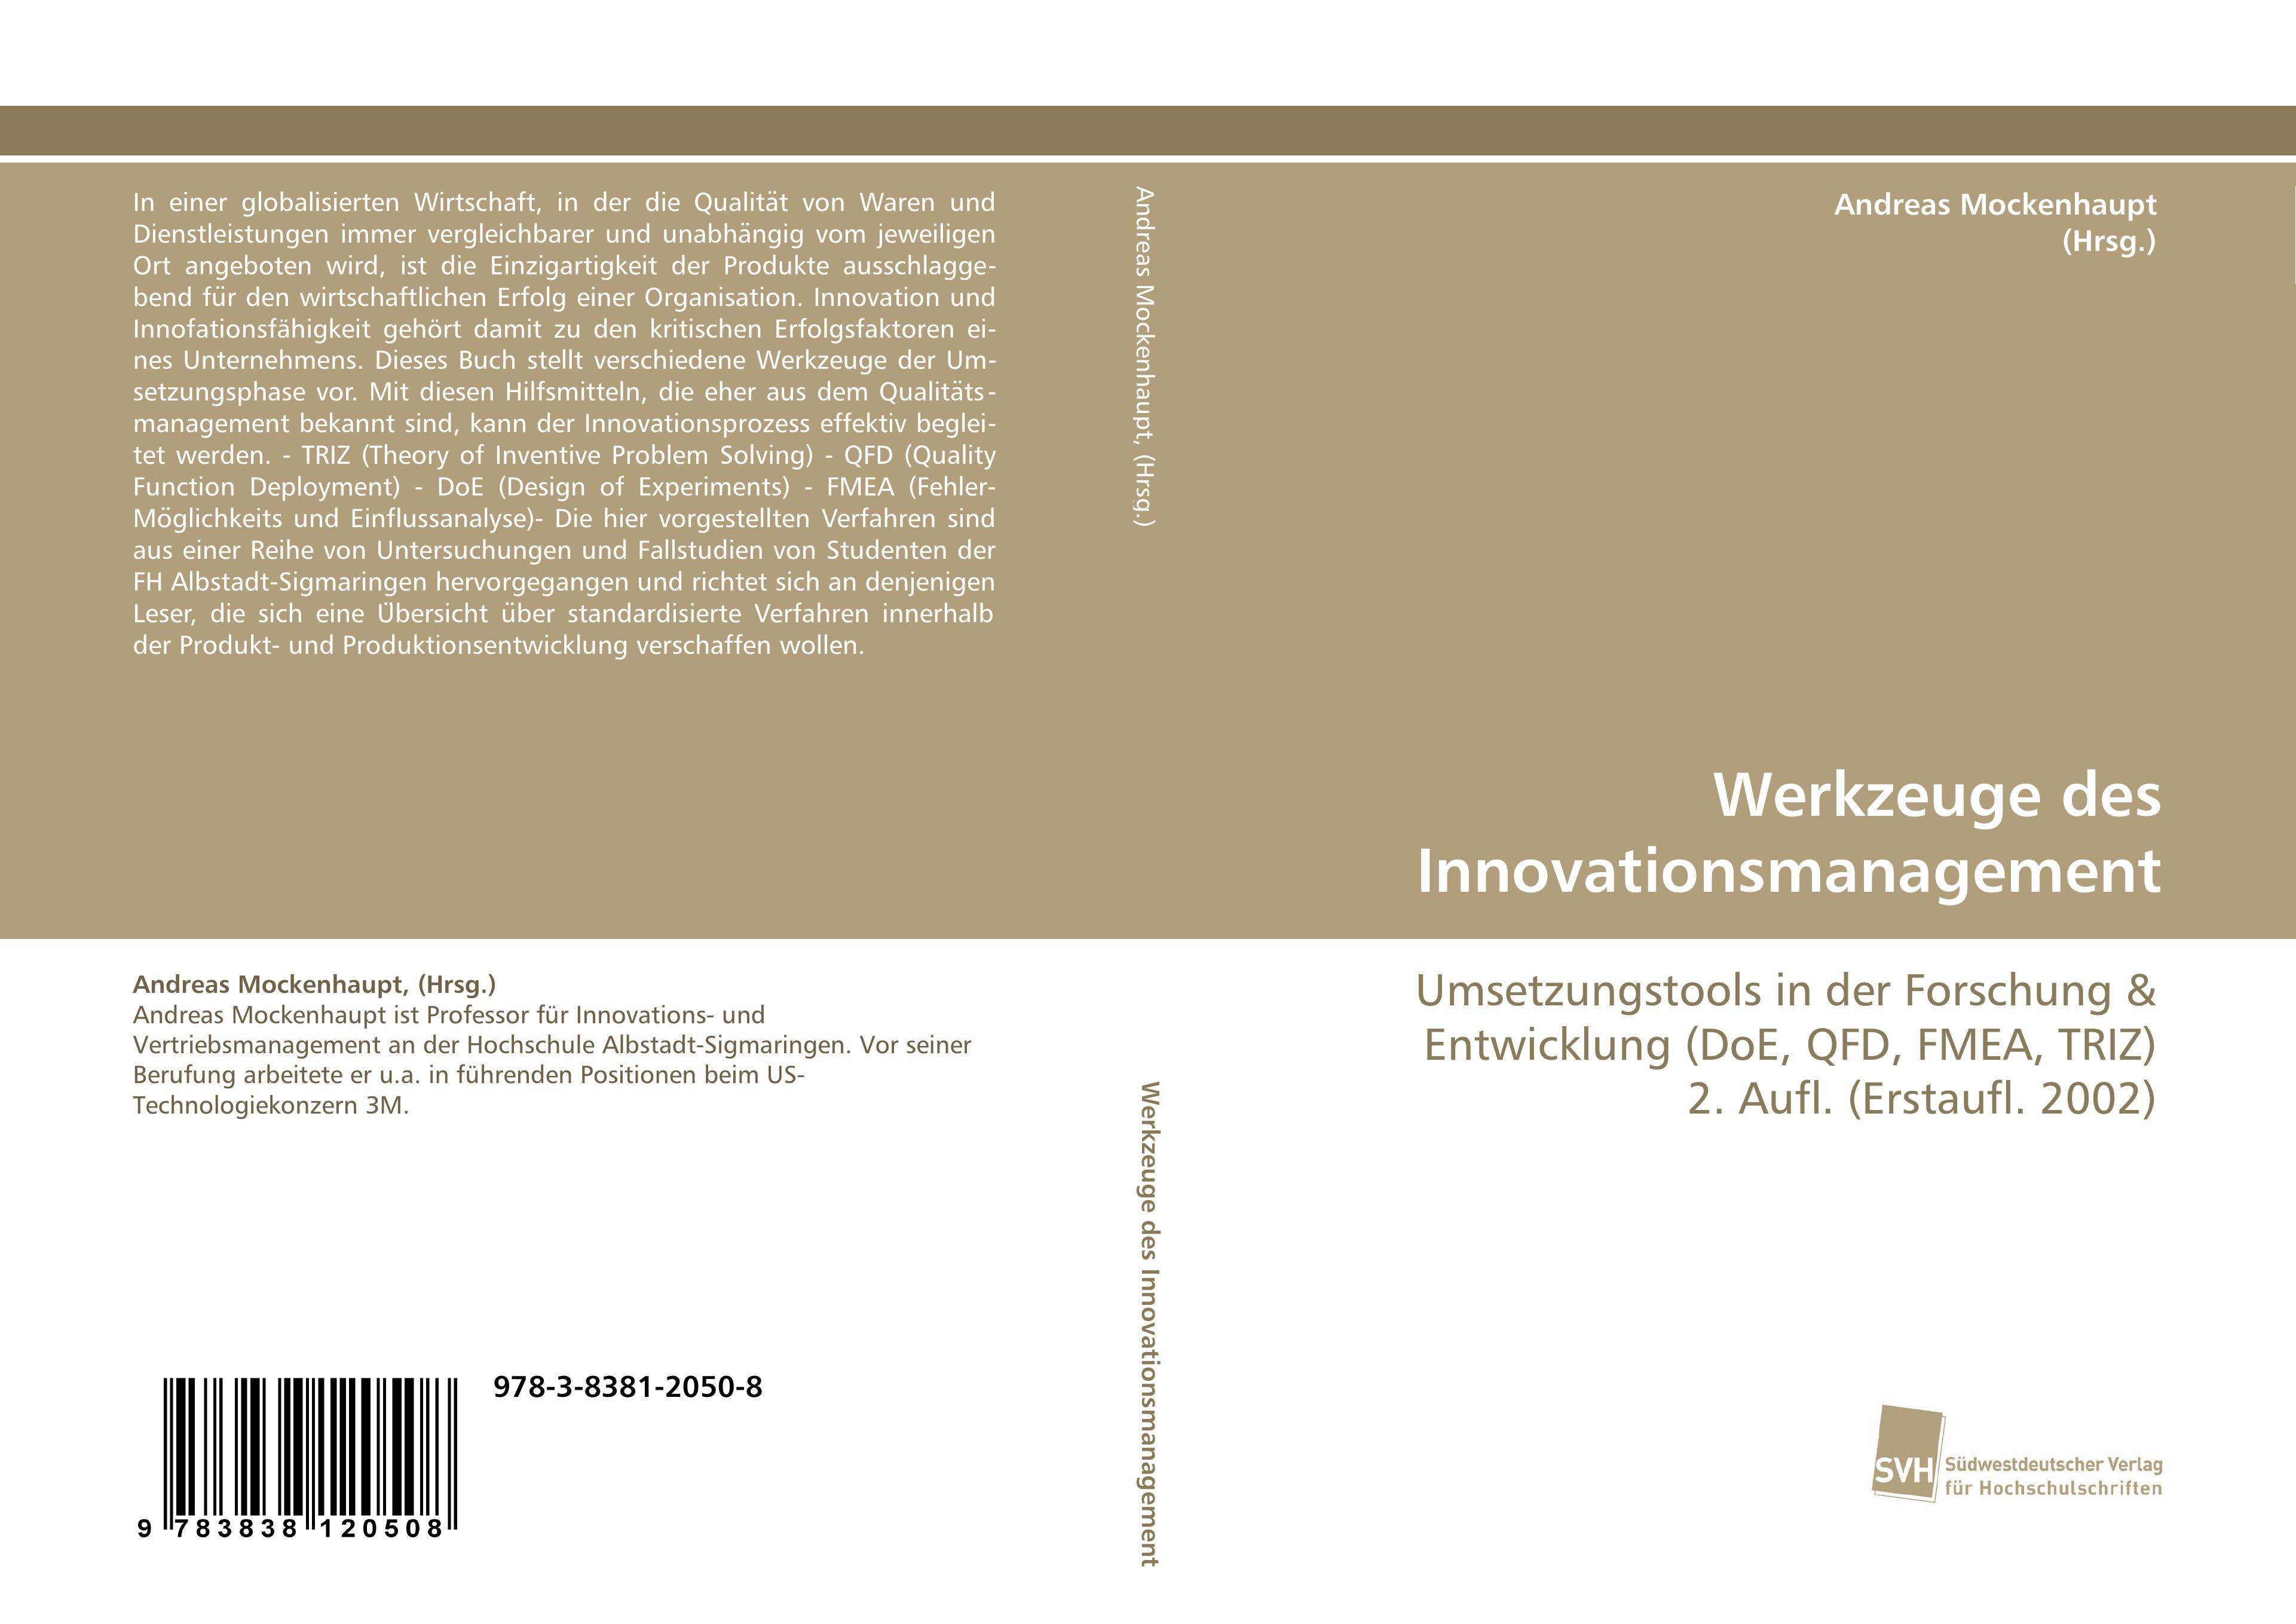 Werkzeuge des Innovationsmanagement | Umsetzungstools in der Forschung & Entwicklung (DoE, QFD, FMEA, TRIZ) 2. Aufl. (Erstaufl. 2002) | Andreas Mockenhaupt (Hrsg. | Taschenbuch | Paperback | 256 S. - Mockenhaupt (Hrsg., Andreas